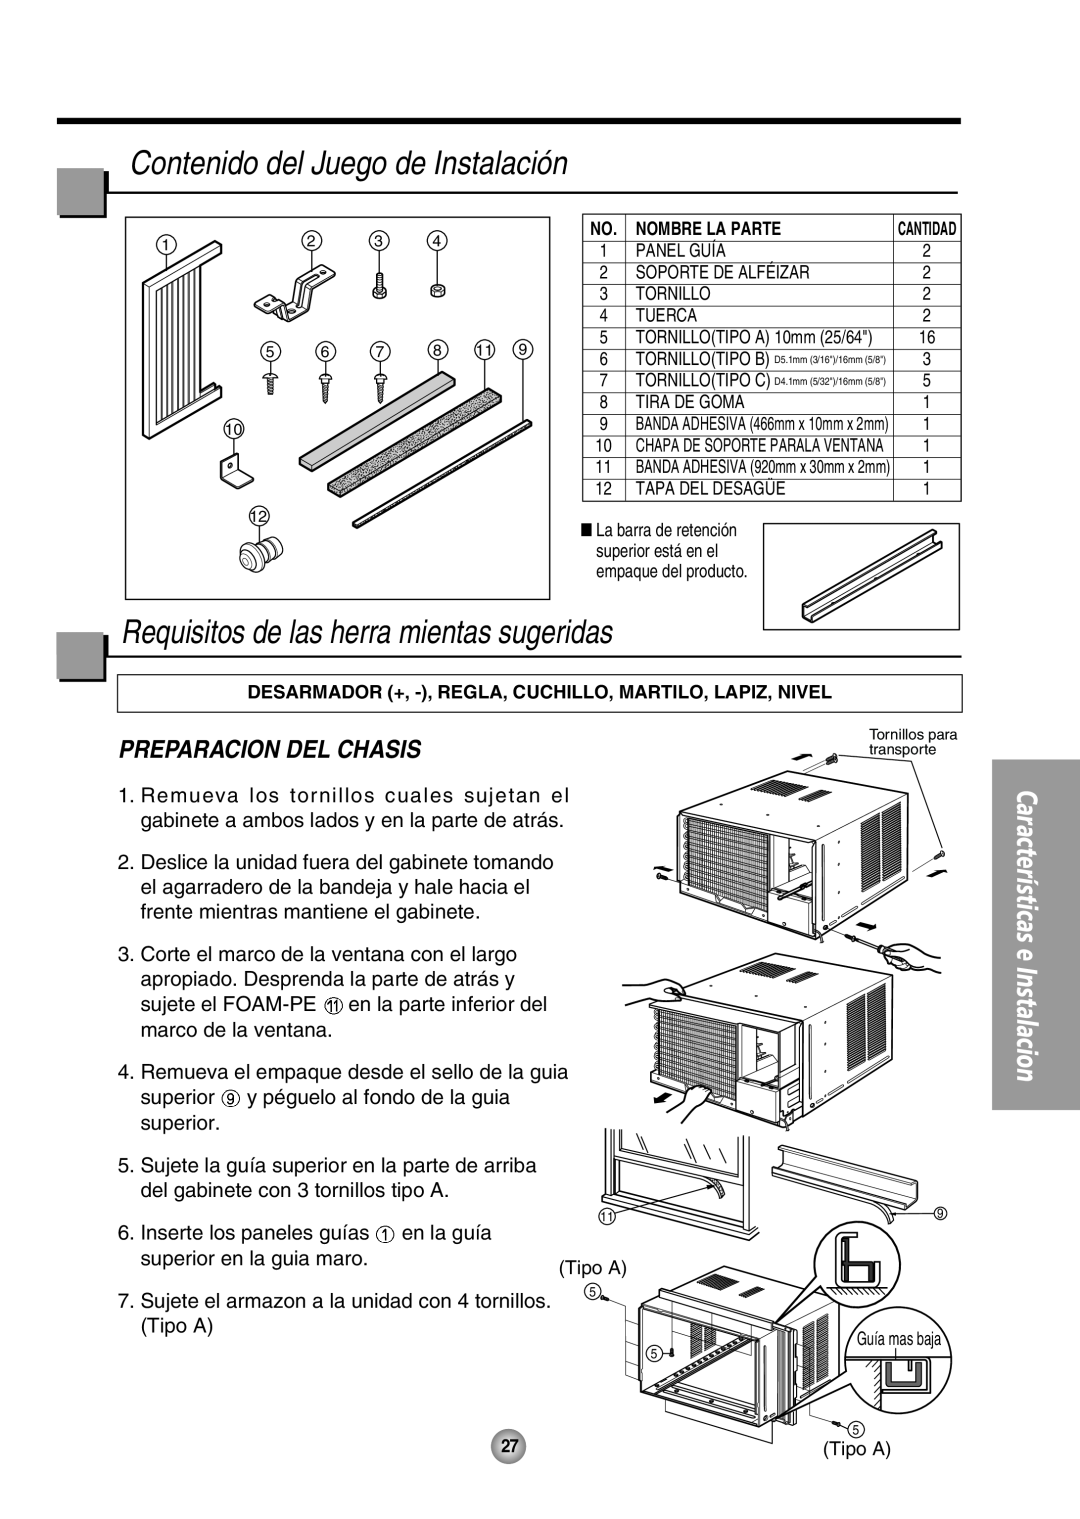 Panasonic CW-XC80HU Contenido del Juego de Instalación, Requisitos de las herra mientas sugeridas, Preparacion Del Chasis 